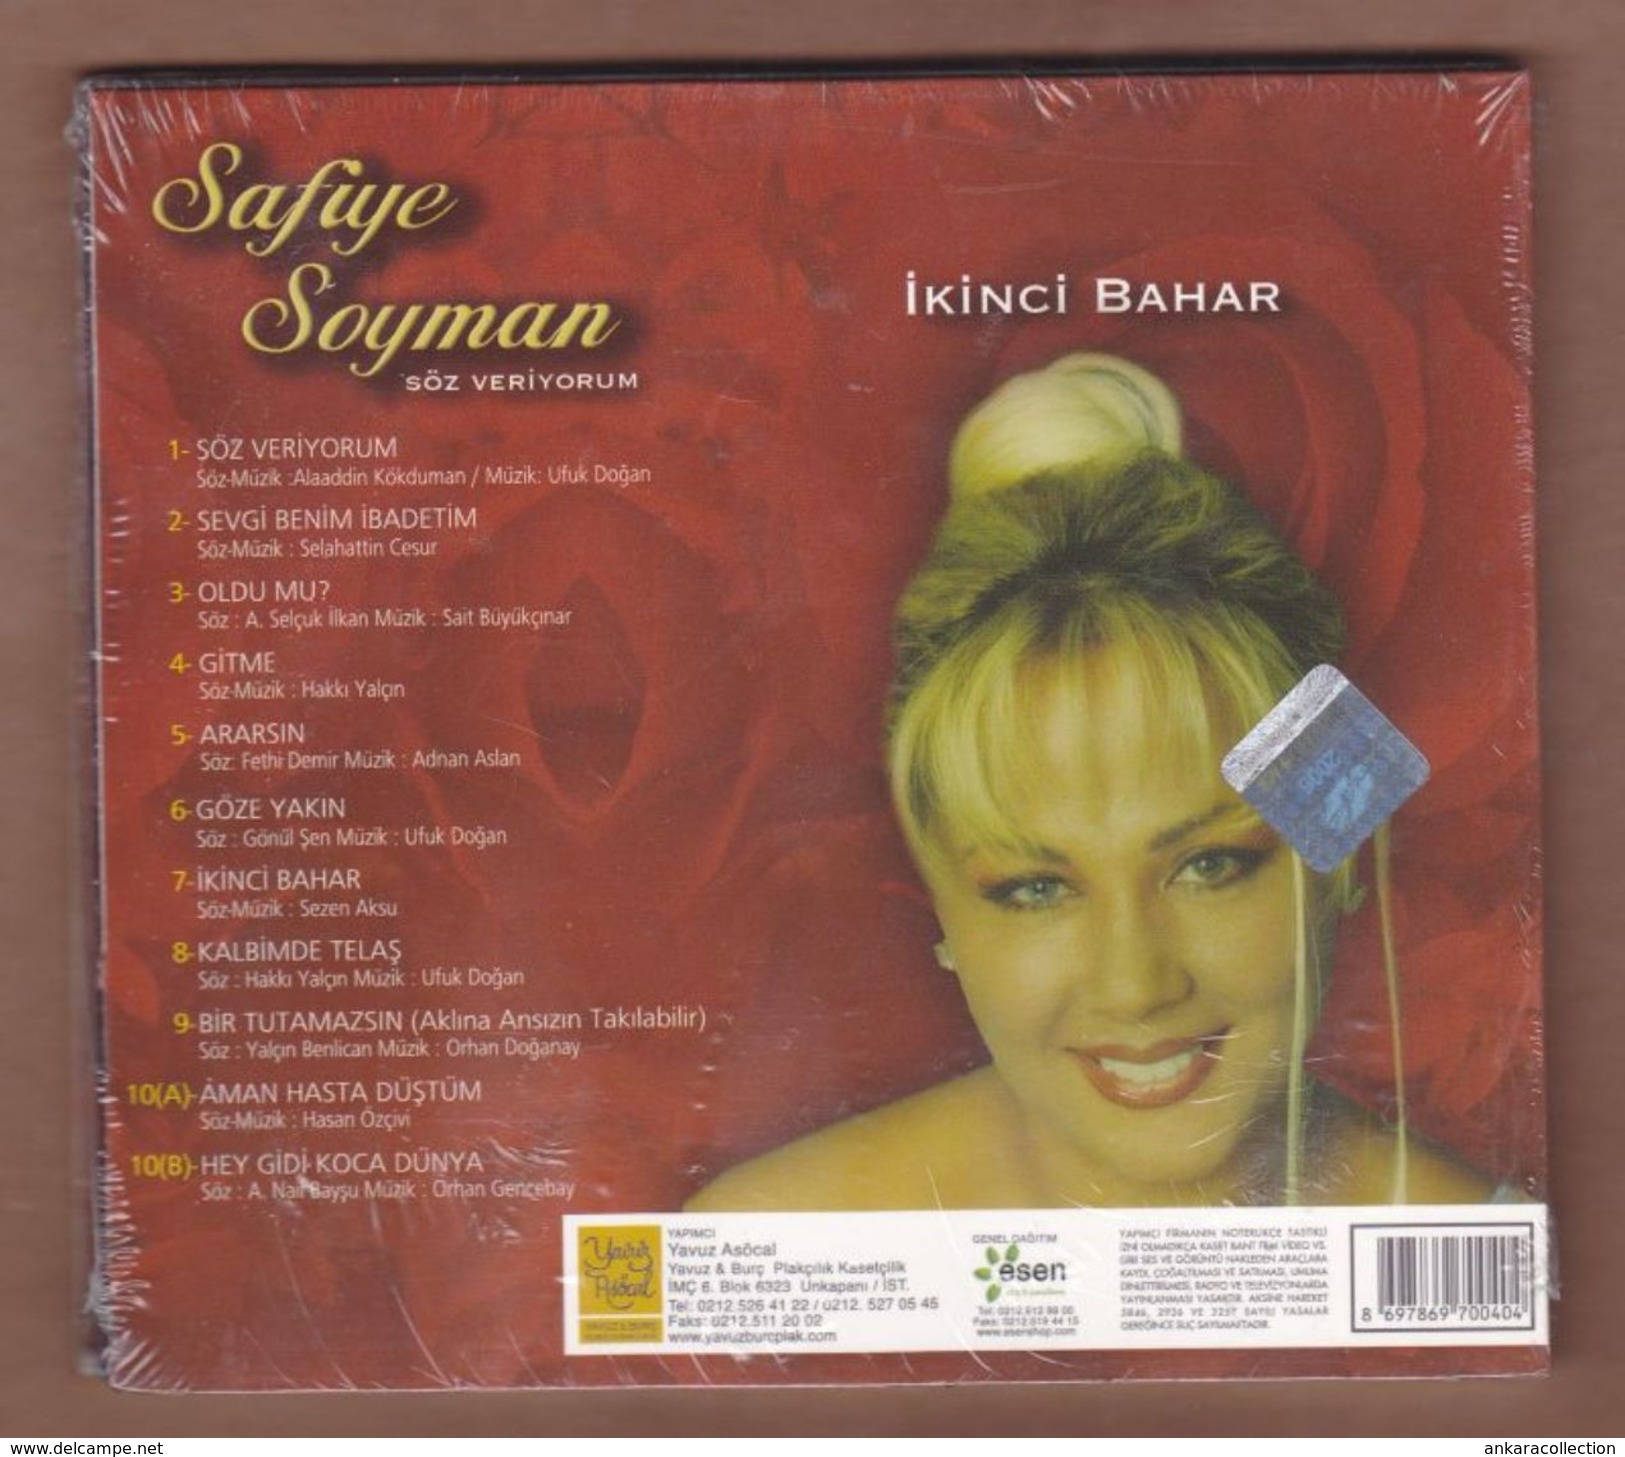 AC - Safiye Soyman Ikinci Bahar BRAND NEW TURKISH MUSIC CD - World Music